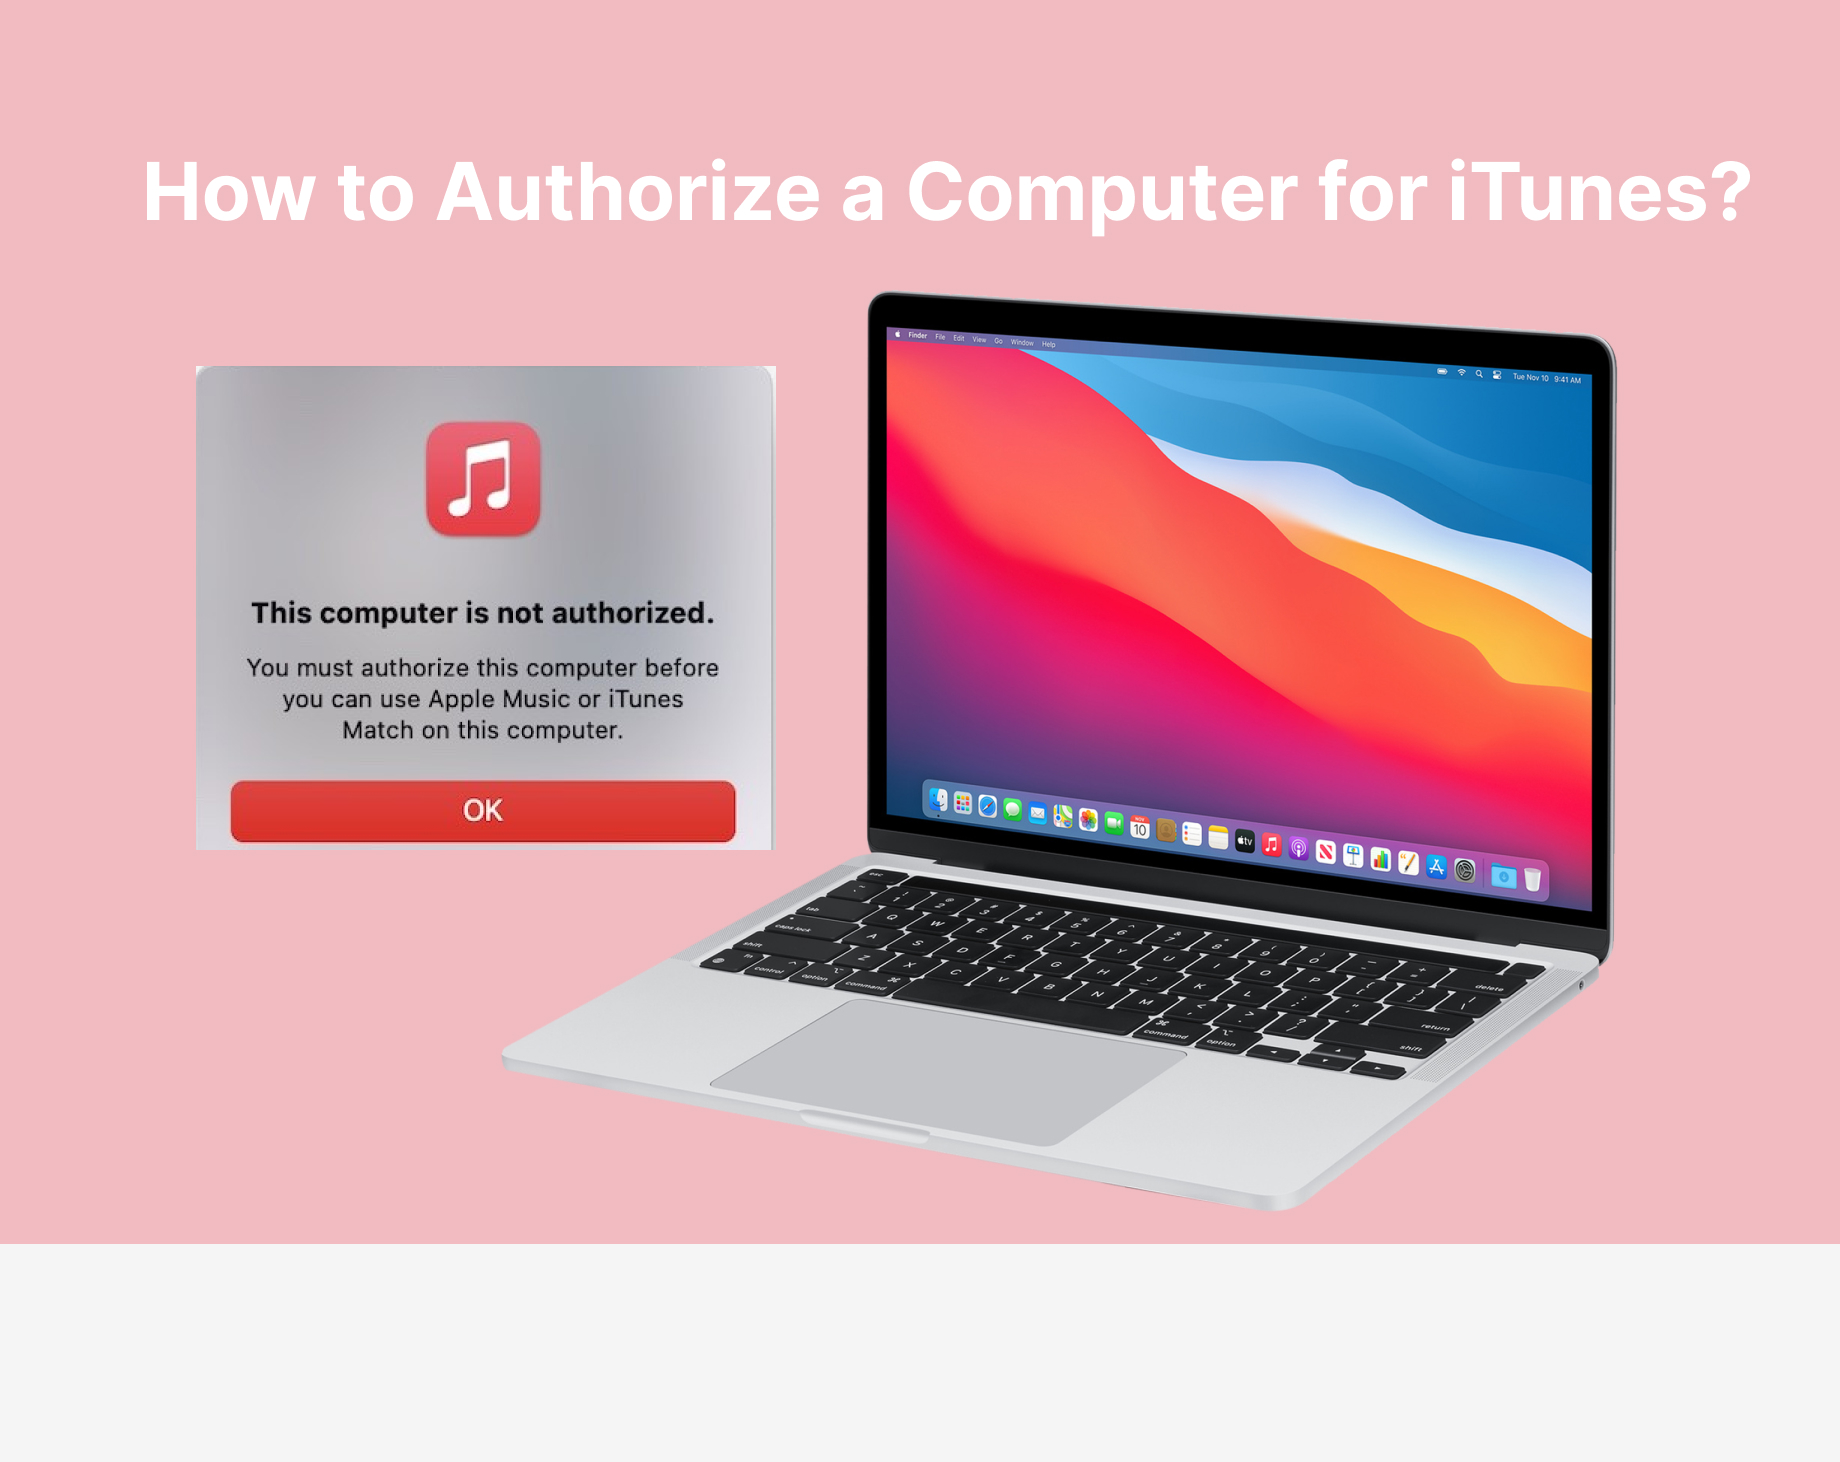 Guía fácil: ¿Cómo Autorizar una Computadora para iTunes?